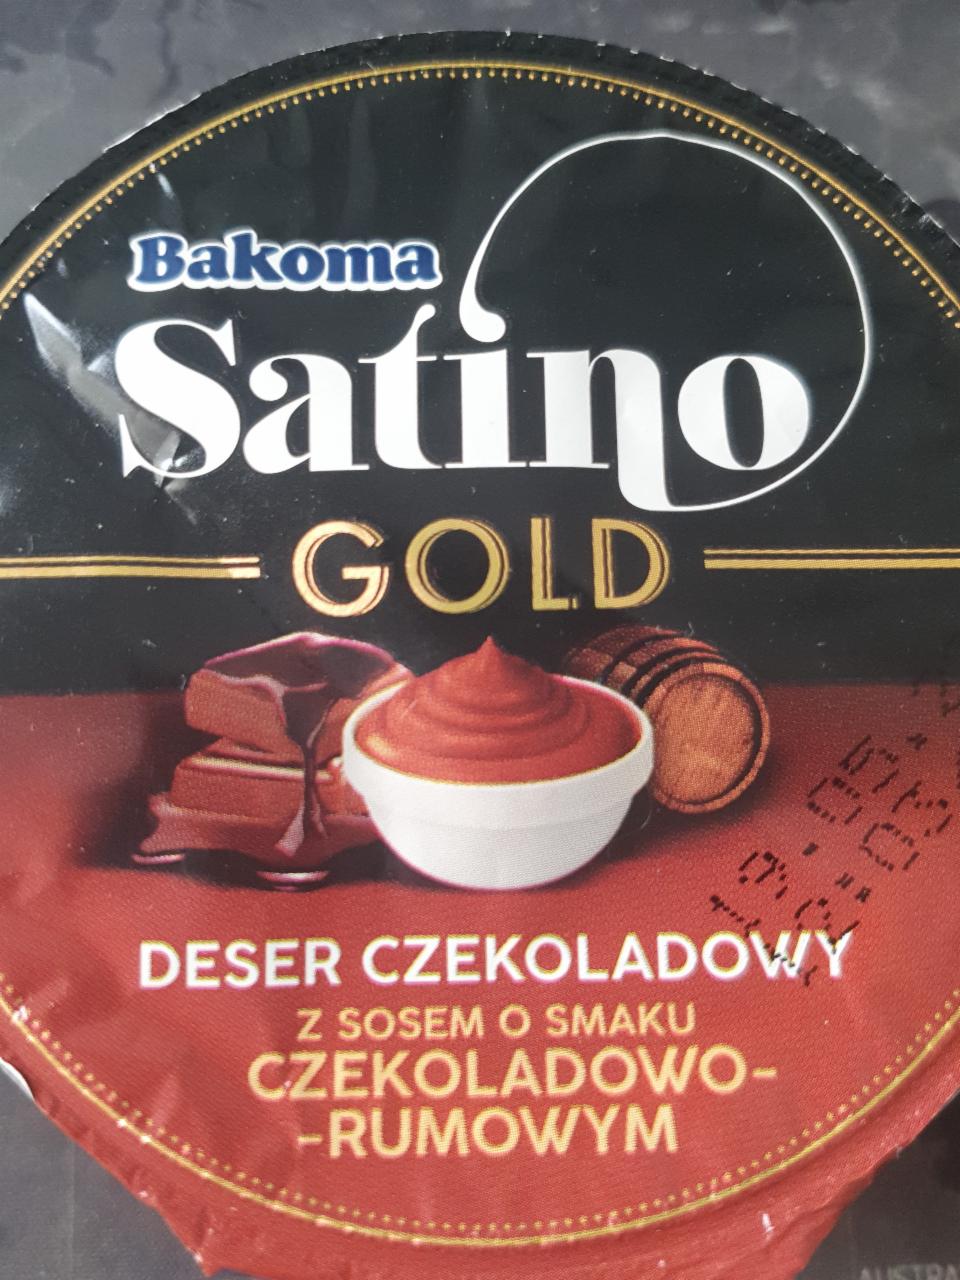 Zdjęcia - Bakoma Satino Gold Deser czekoladowy z sosem o smaku czekoladowo-rumowym 135 g